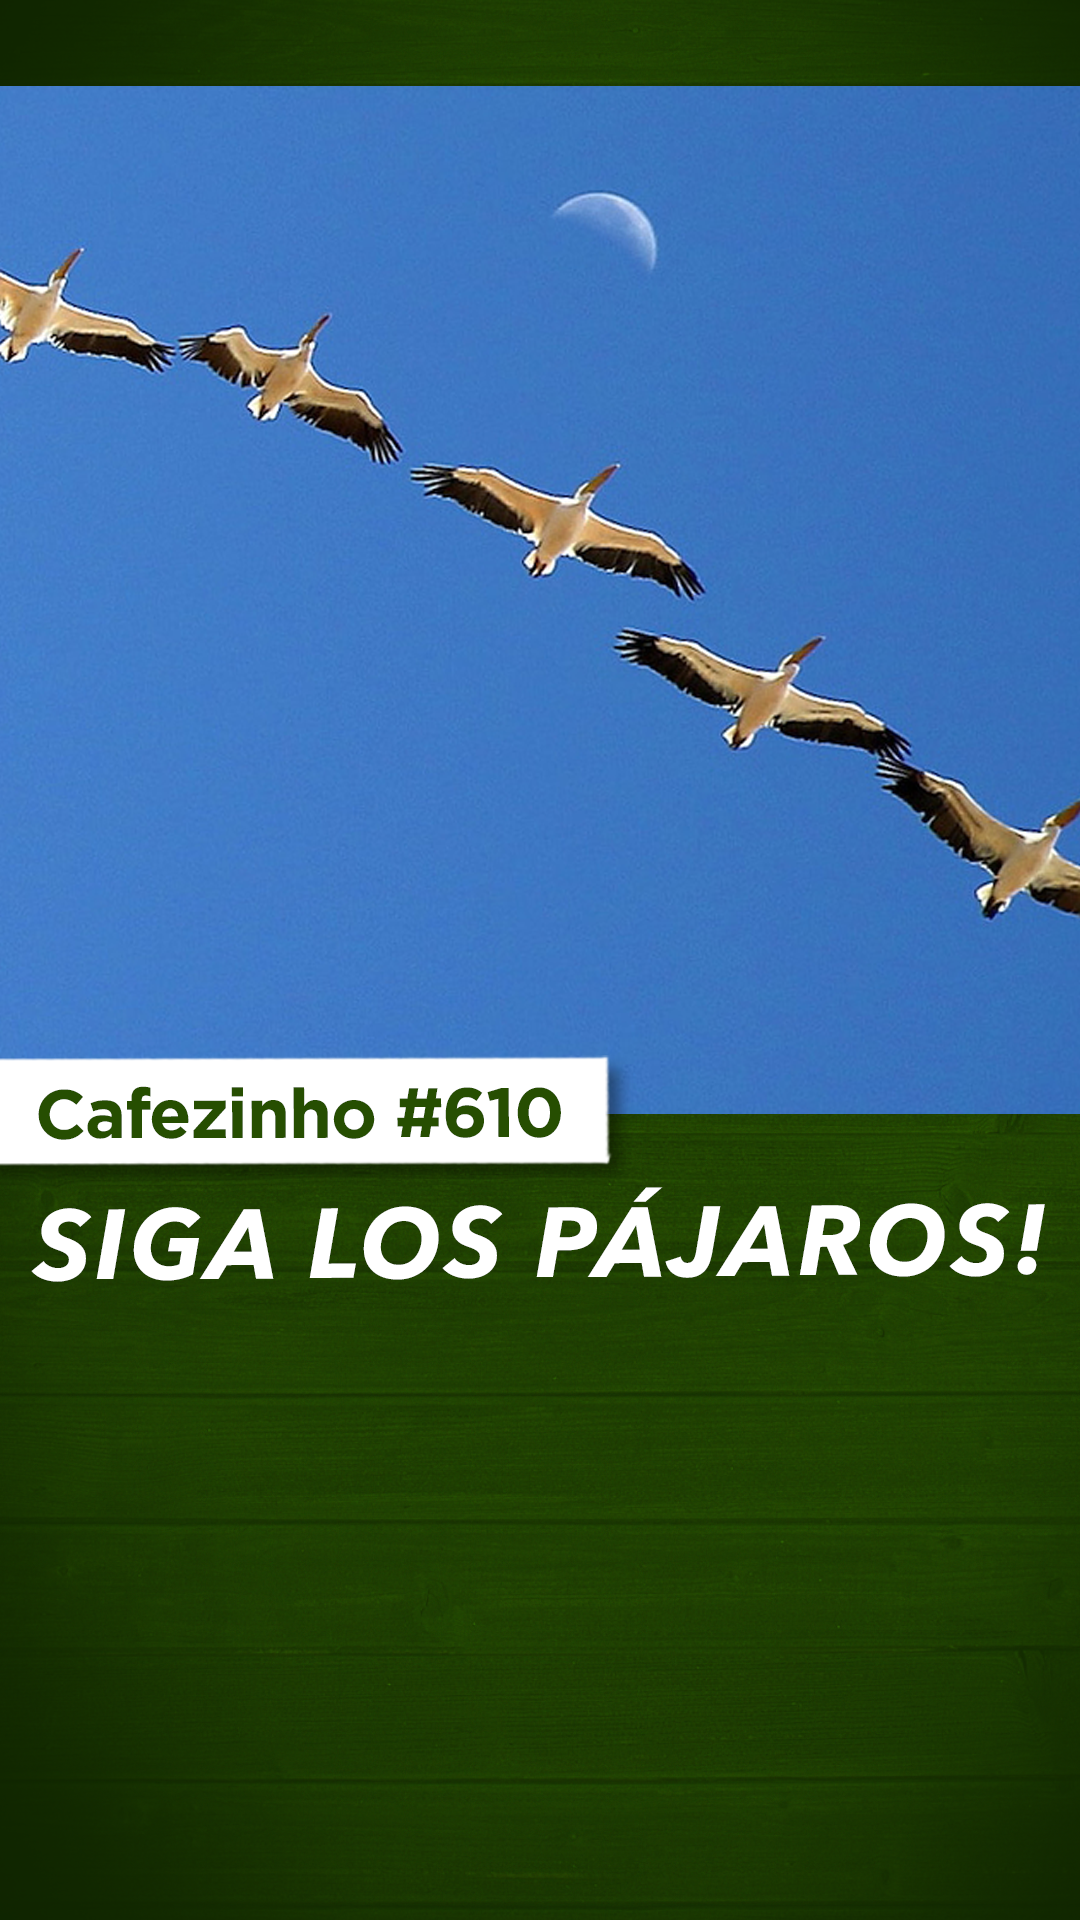 Cafezinho 610 - Siga los pájaros!